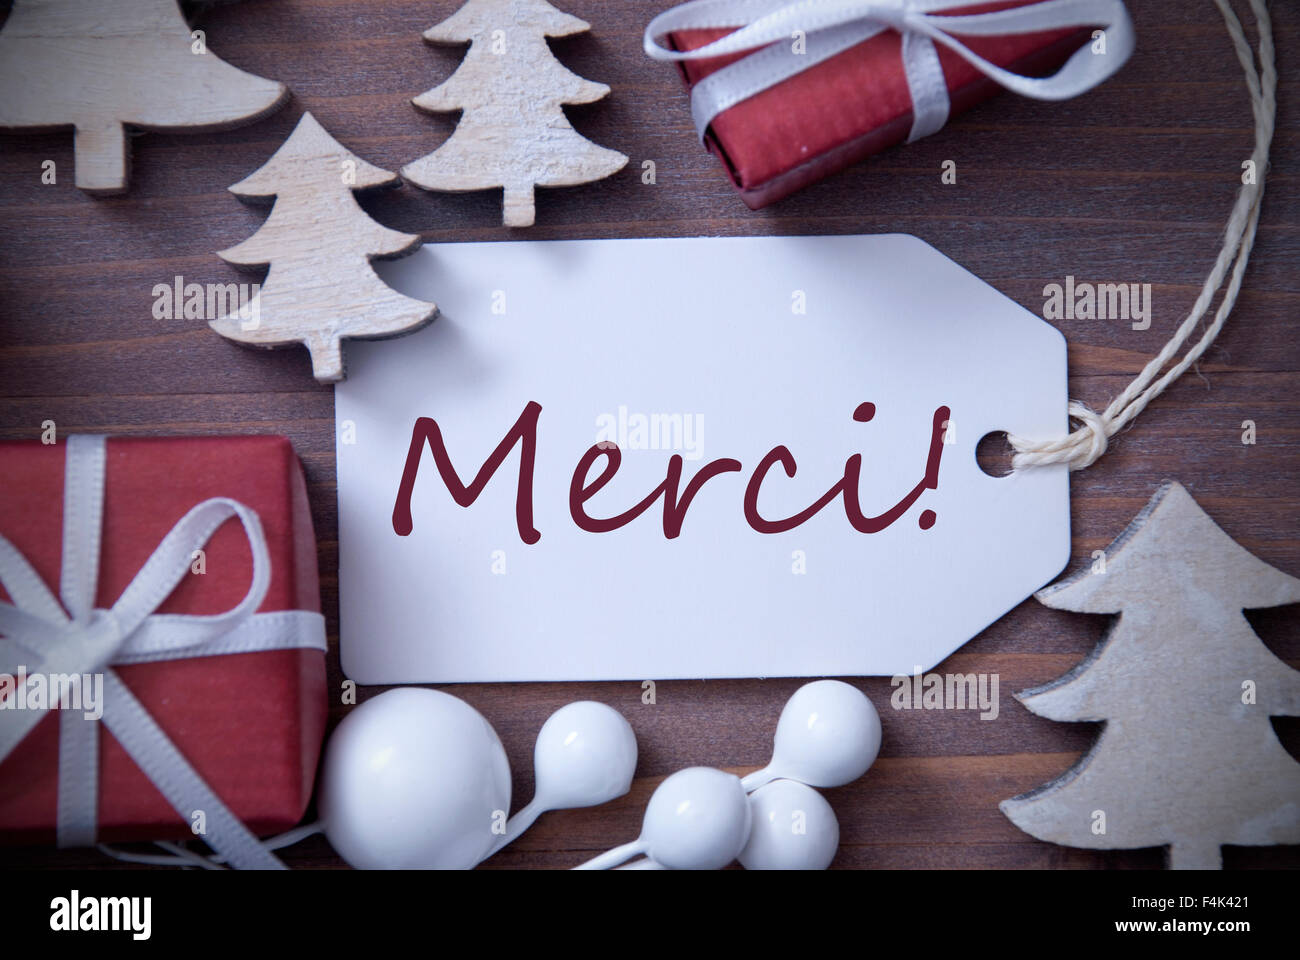 Weihnachten-Label Geschenk Baum Merci Mittel danke Stockfotografie - Alamy